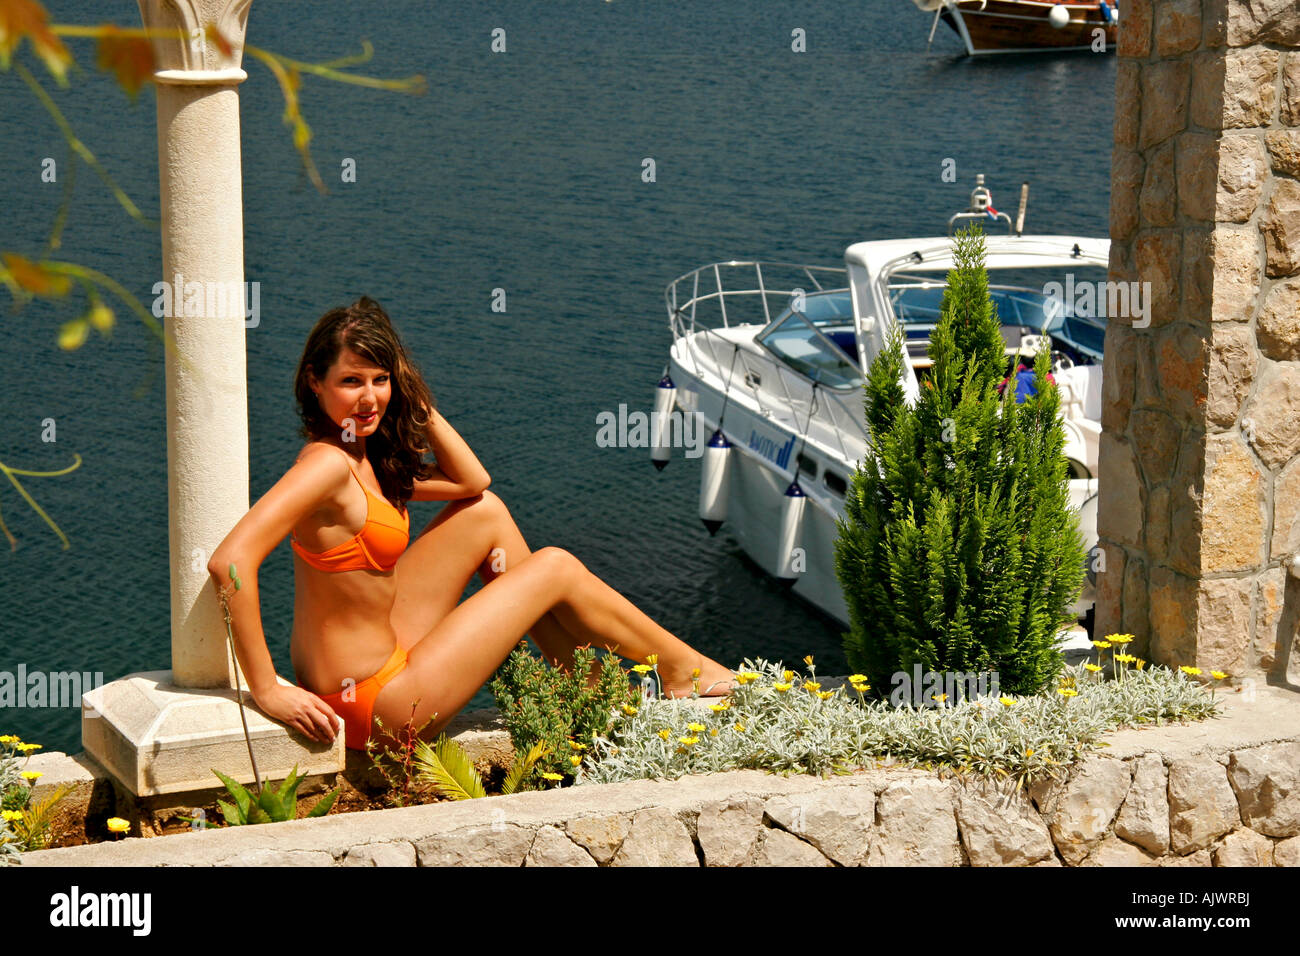 Junge Frau sonnt sich der Kroatischen Mittelmeerkueste | Jeune femme est de prendre du soleil à la côte méditerranéenne Croate Banque D'Images